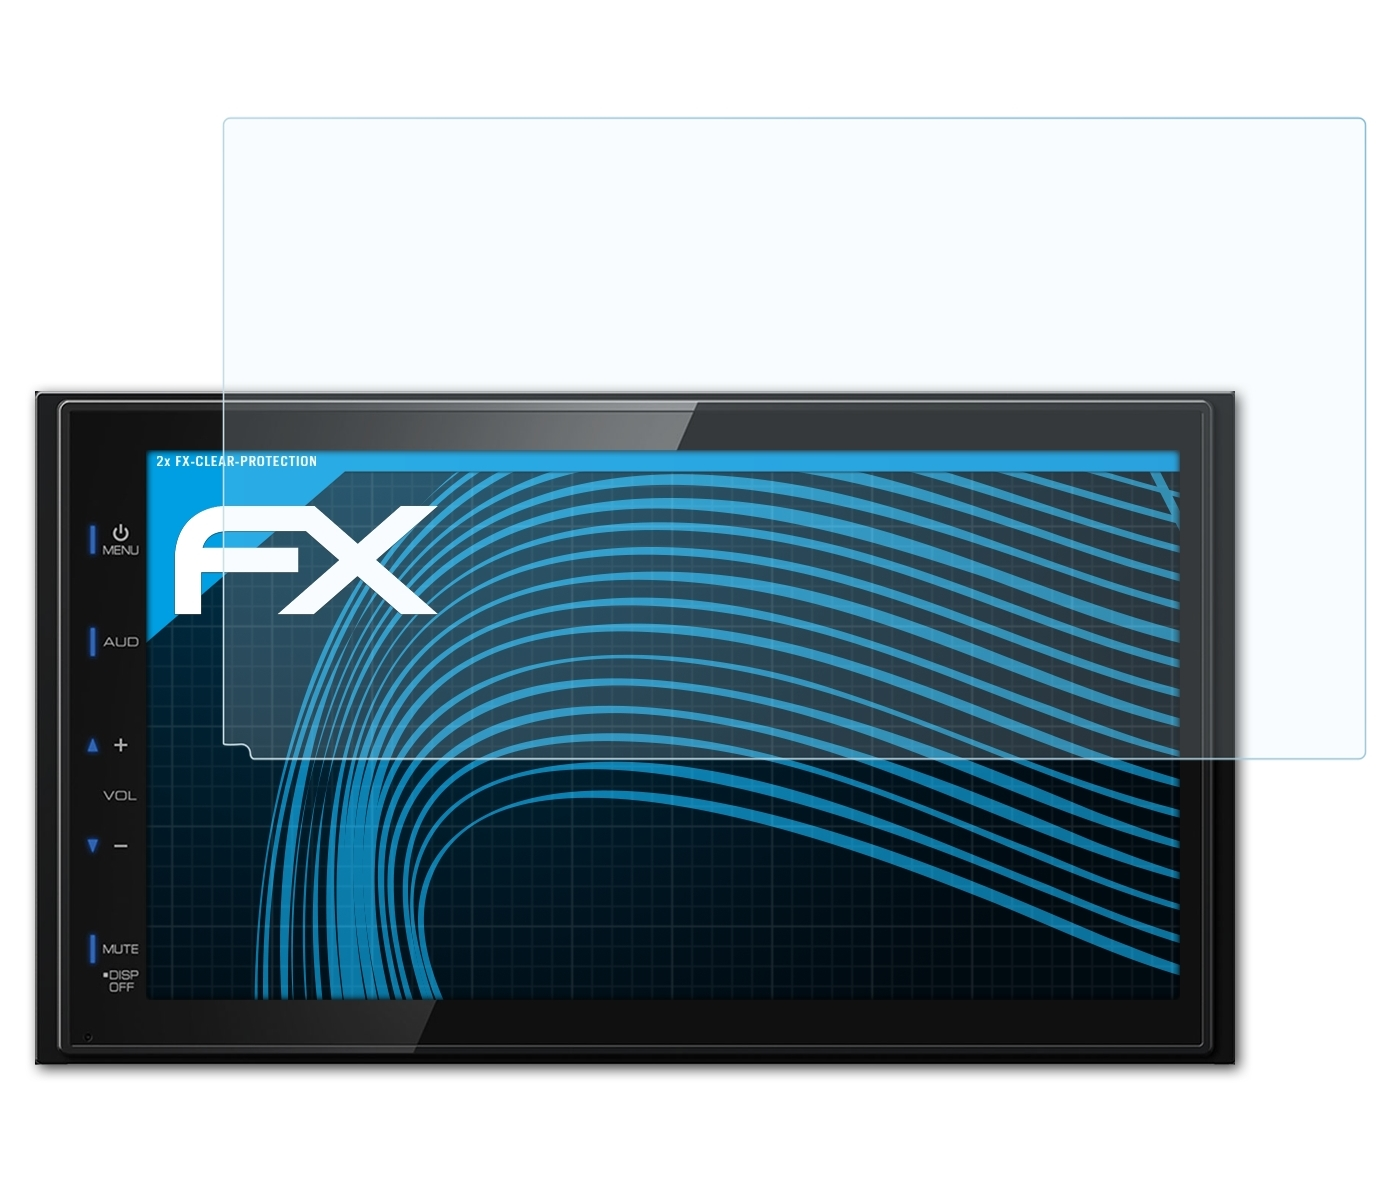 ATFOLIX Kenwood Displayschutz(für DMX110BT) FX-Clear 2x